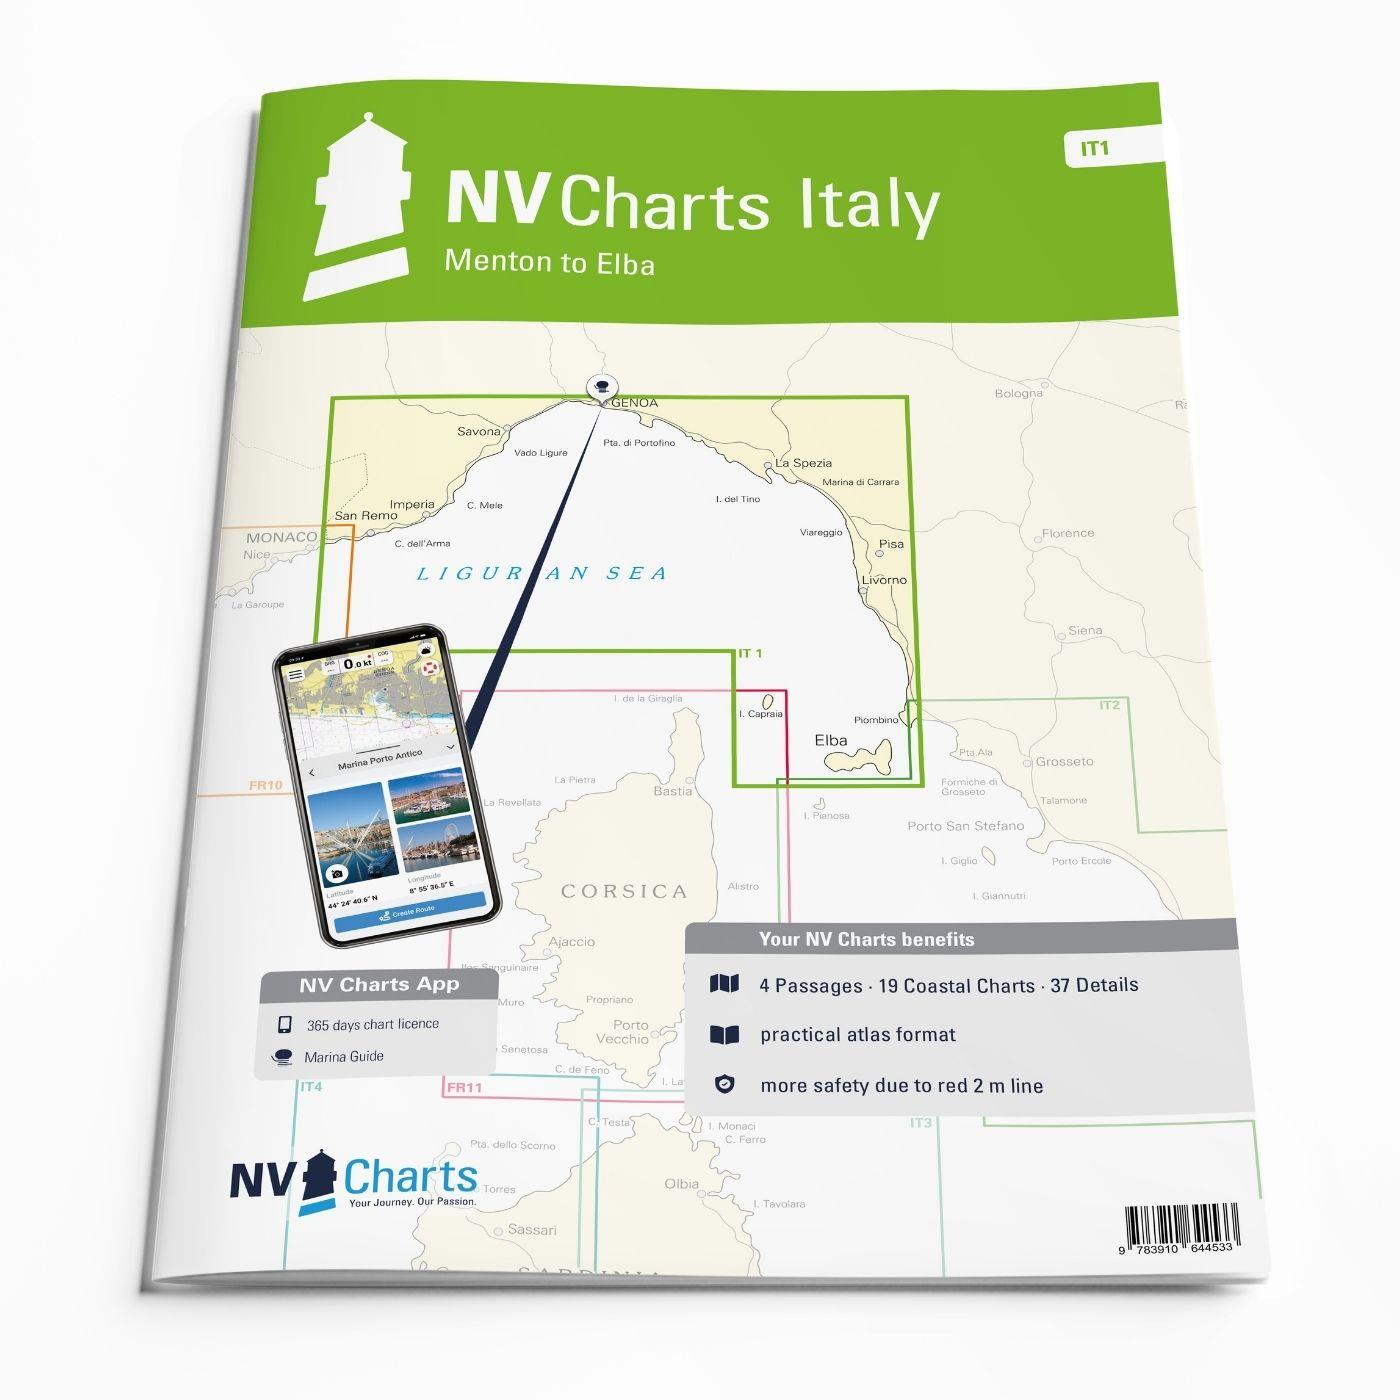 NV Charts Italy IT1 - Menton to Elba